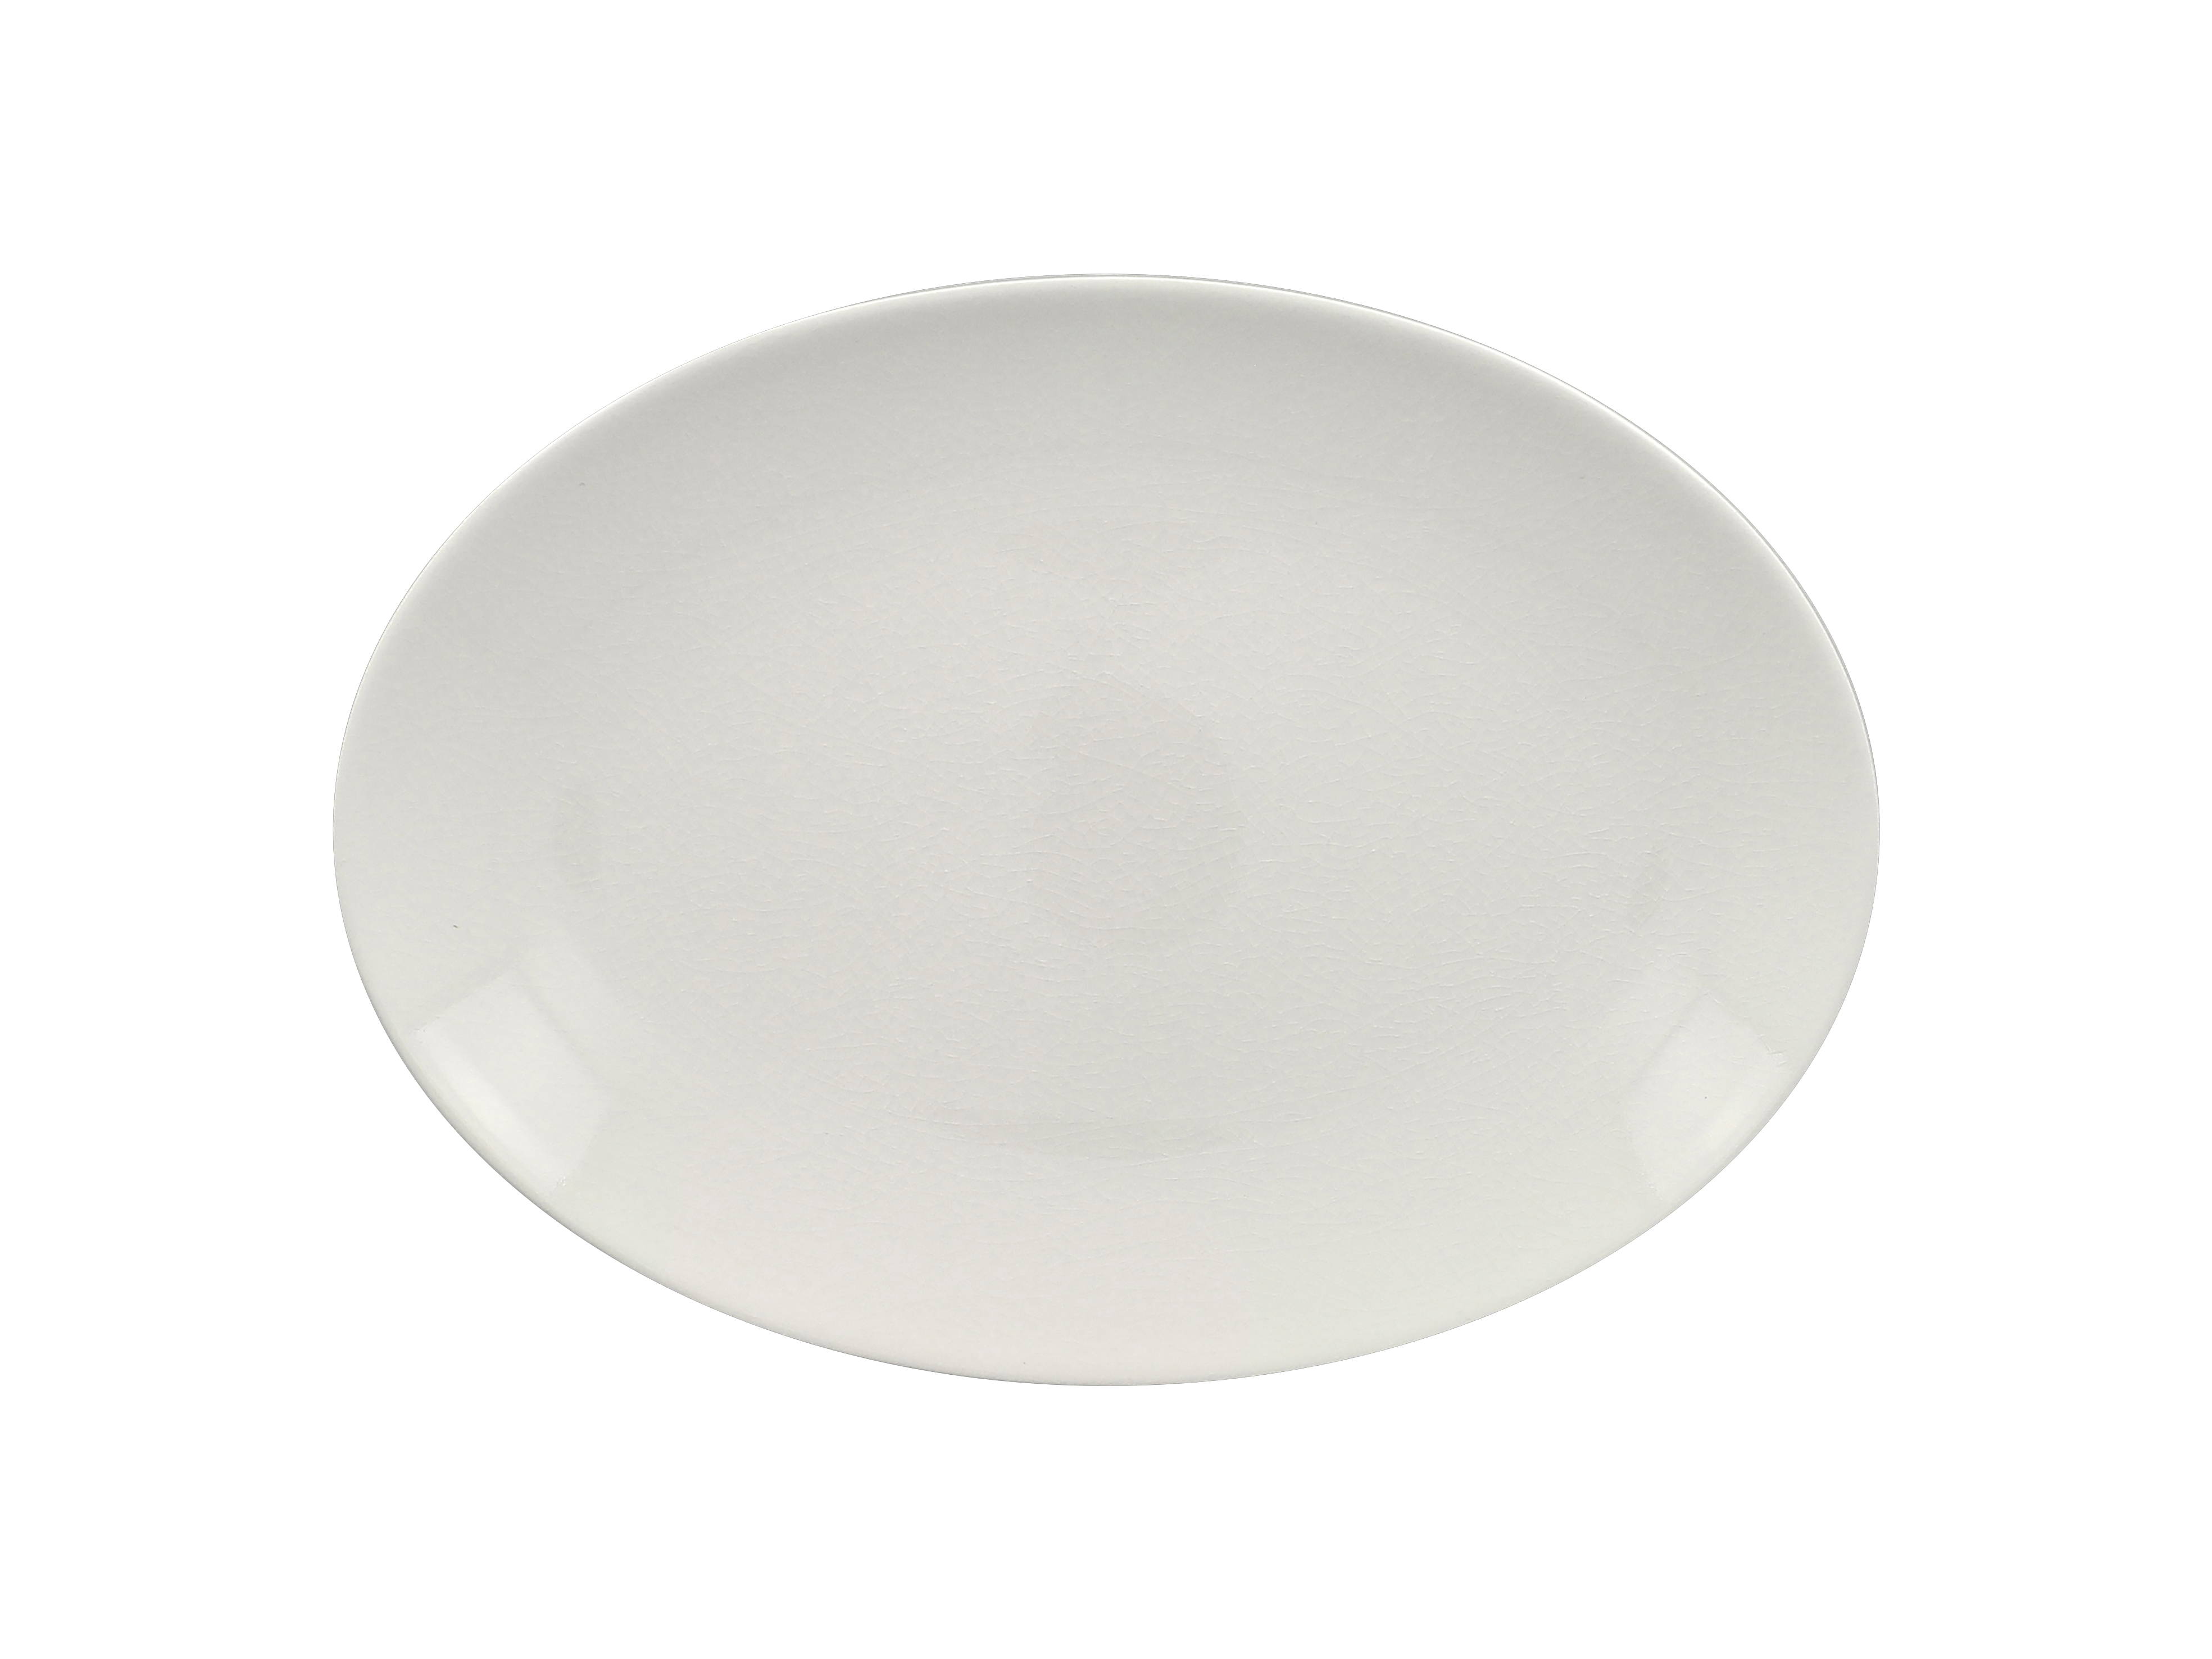 Platte oval 32x23cm VINTAGE weiß